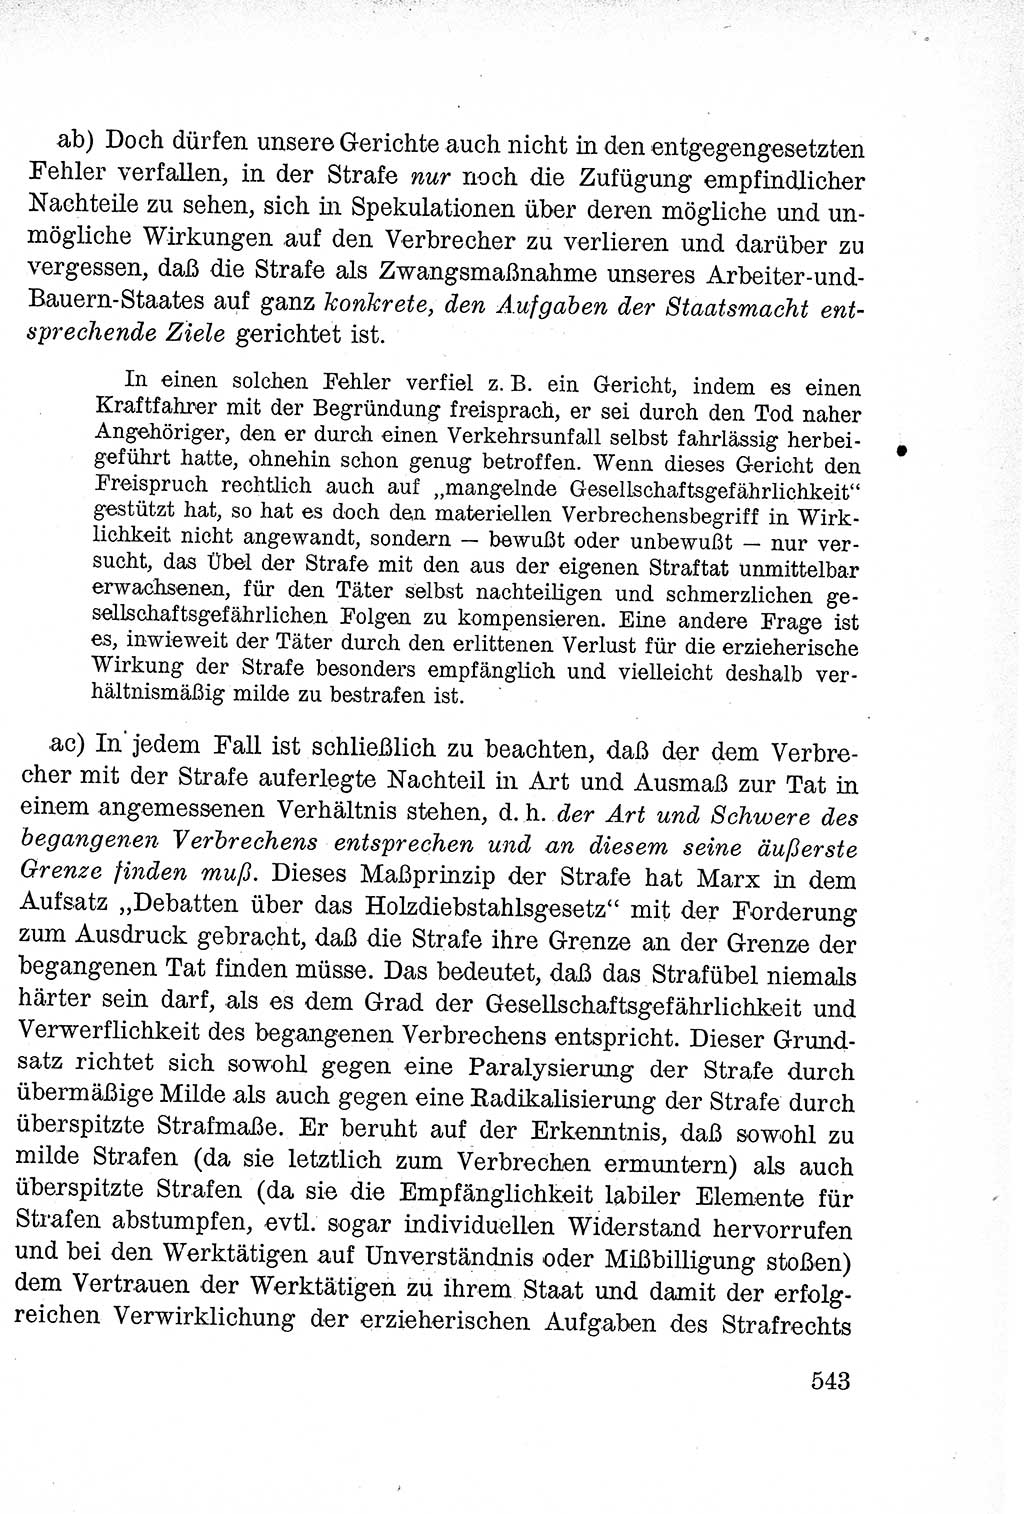 Lehrbuch des Strafrechts der Deutschen Demokratischen Republik (DDR), Allgemeiner Teil 1957, Seite 543 (Lb. Strafr. DDR AT 1957, S. 543)